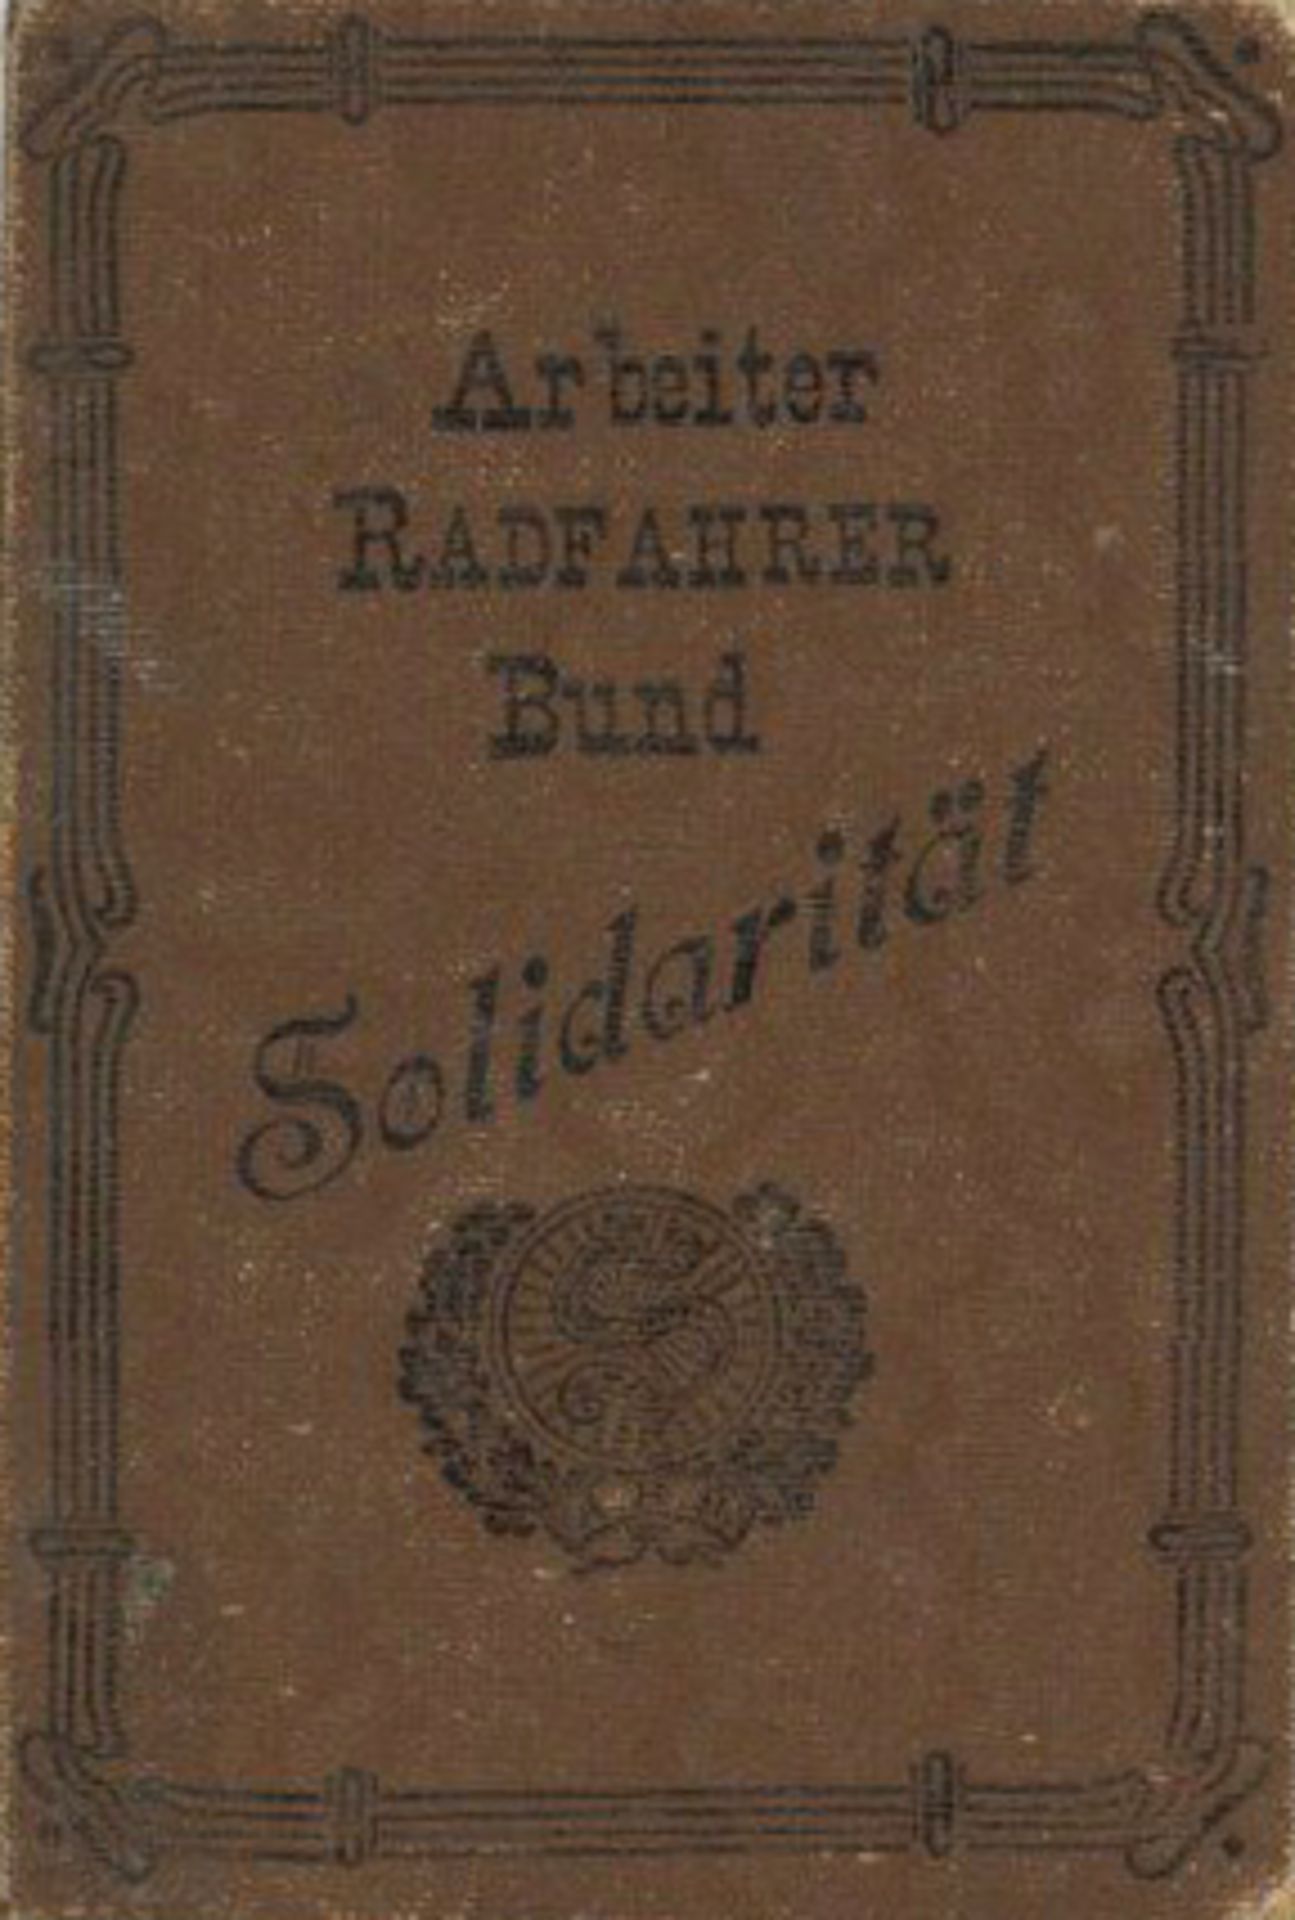 Fahrrad Offenbach Ausweis vom Arbeiter-Rad und Kraftfahrer-Bund Solidarität 1932